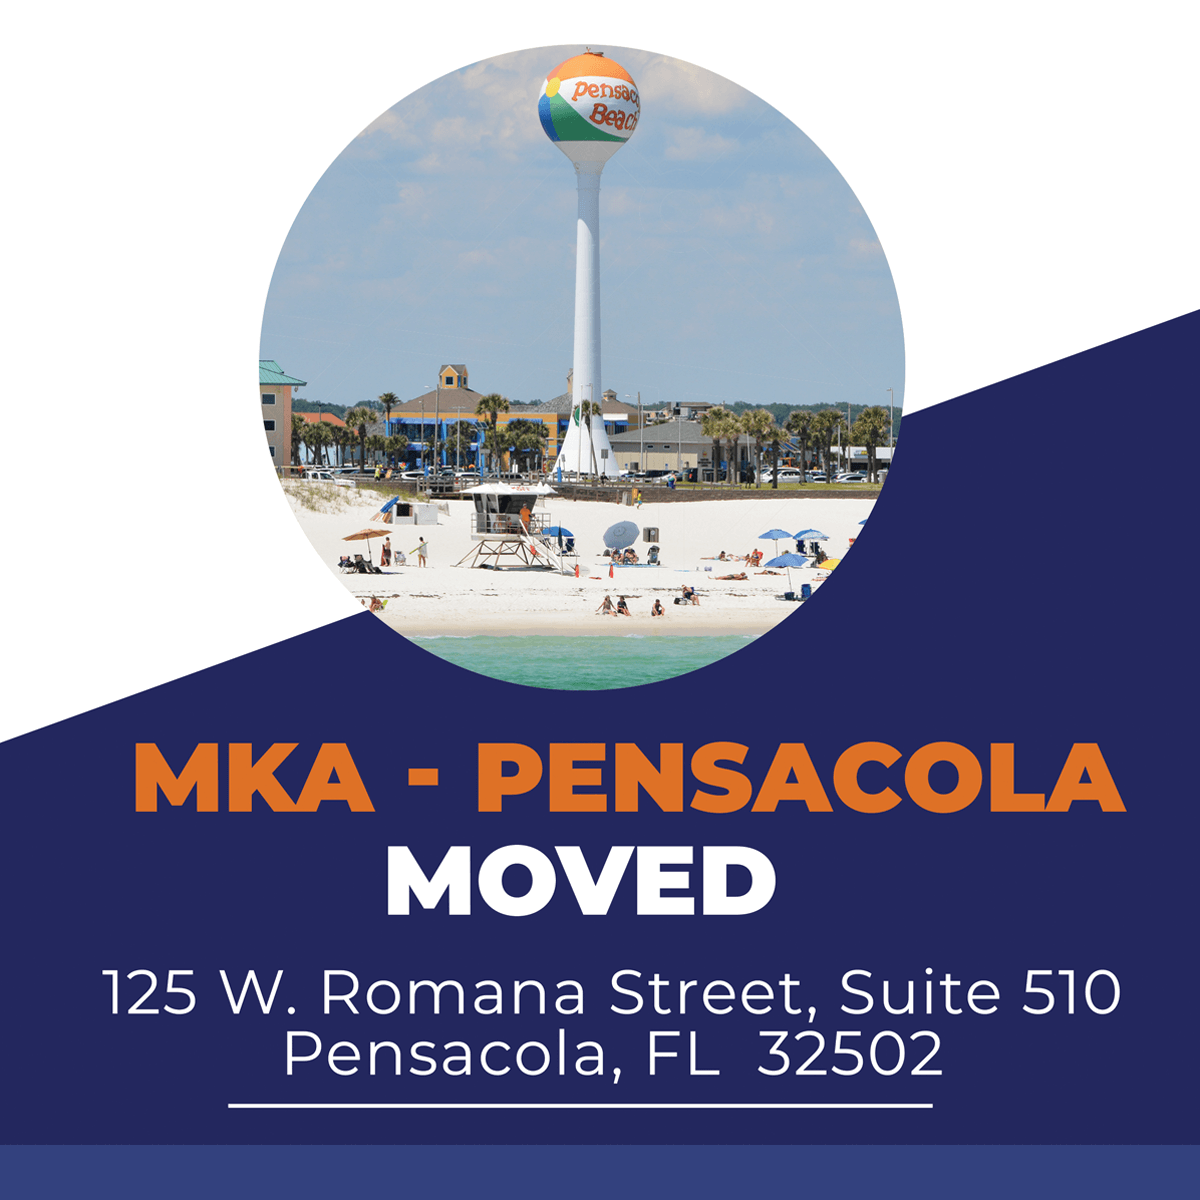 We’ve Moved – MKA Pensacola